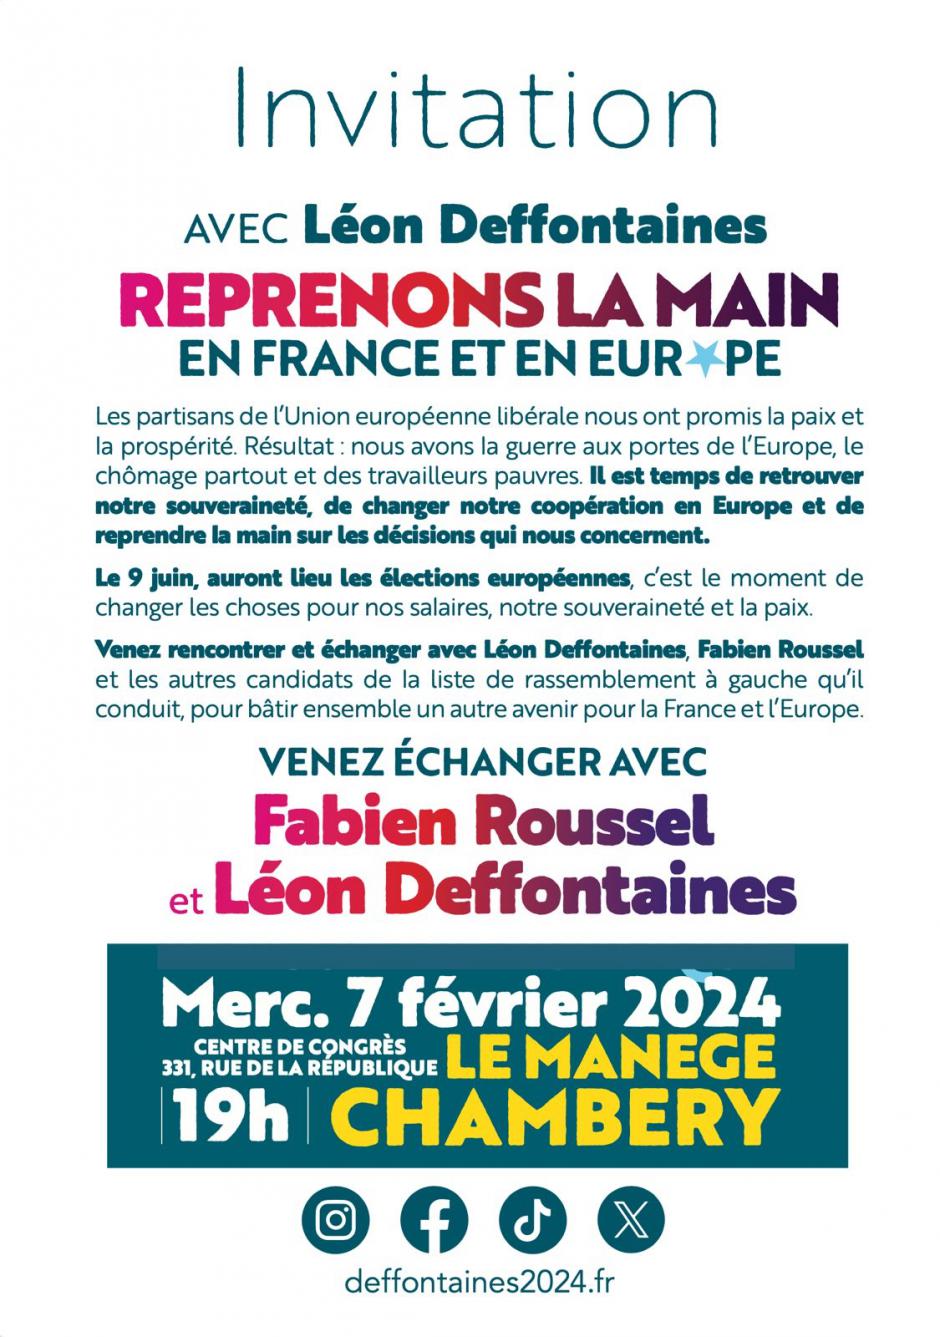 Réunion publique de Léon Deffontaines et Fabien Roussel à Chambéry - Élections européennes 2024, 7 février 2024